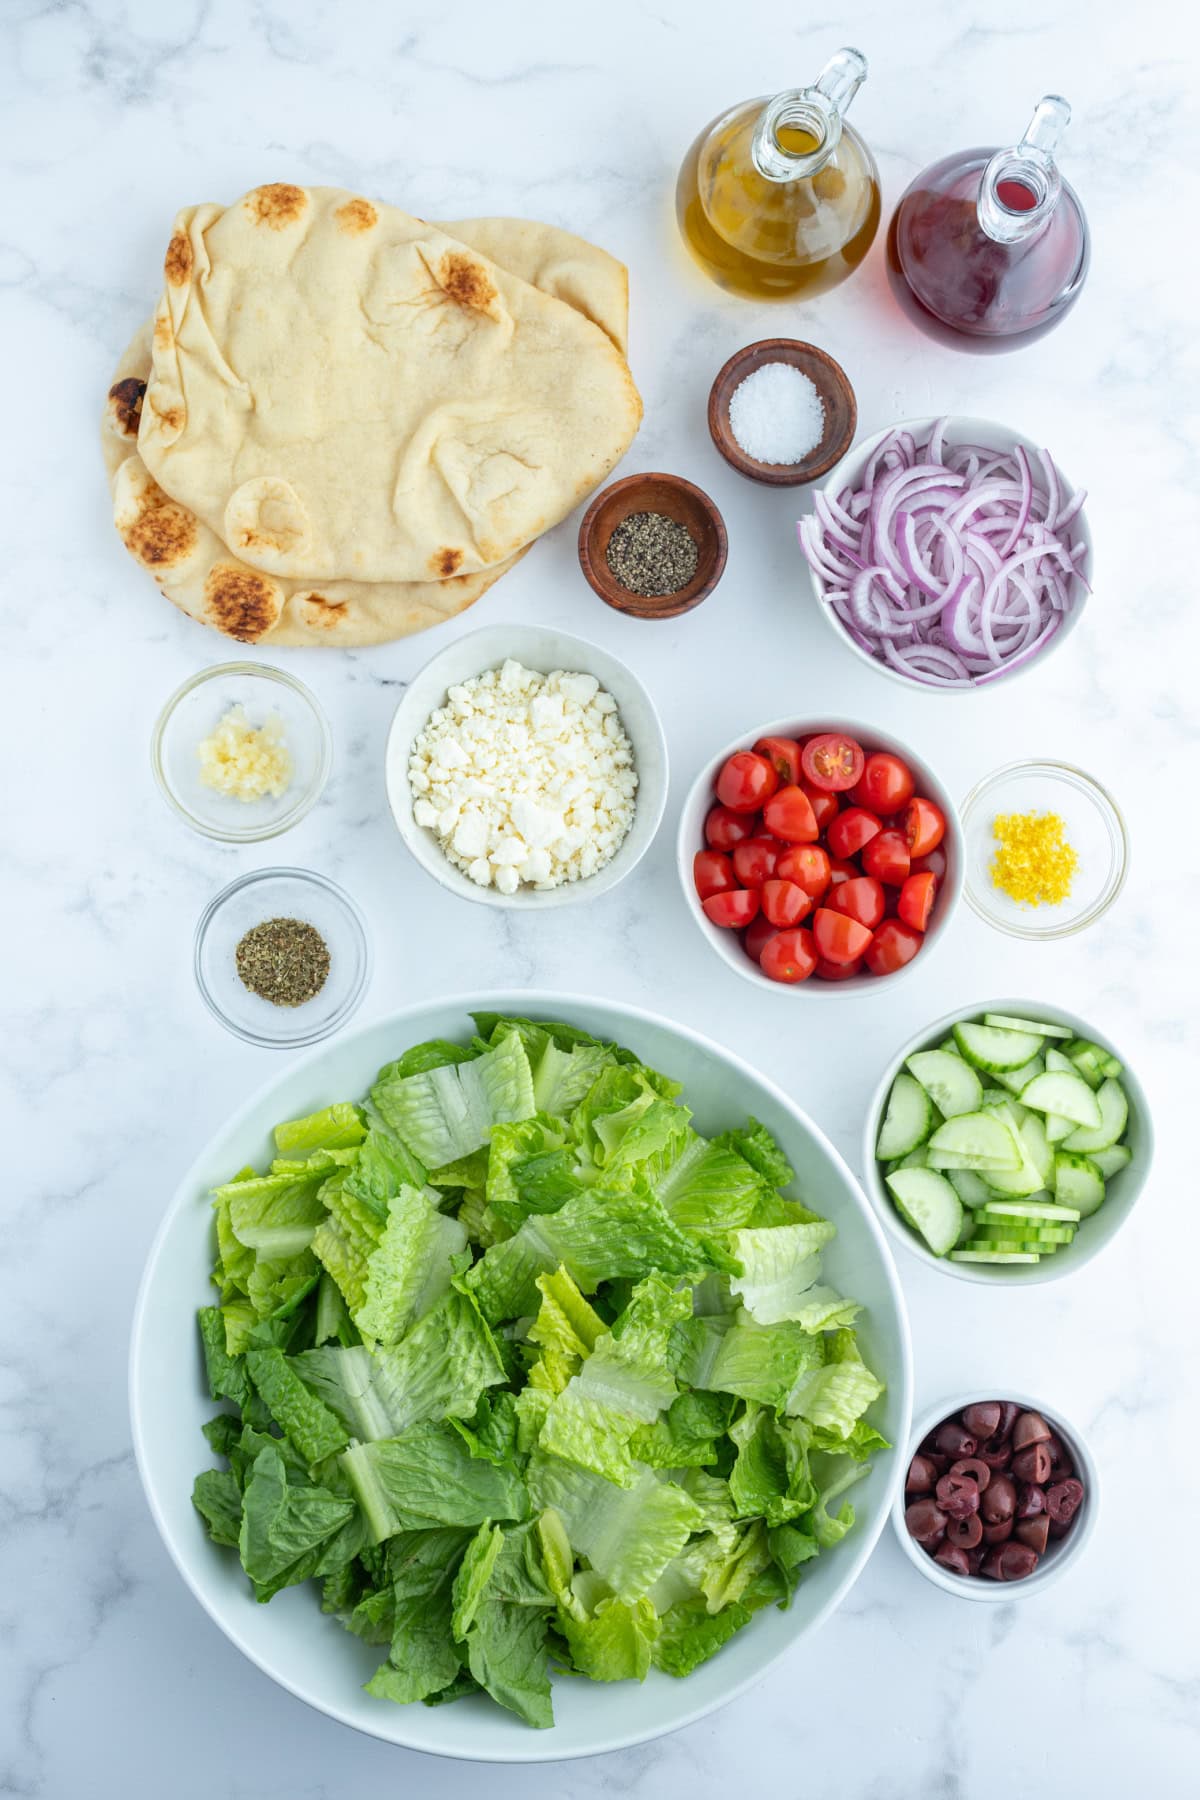 ingredients displayed for making greek salad with seasoned flatbread